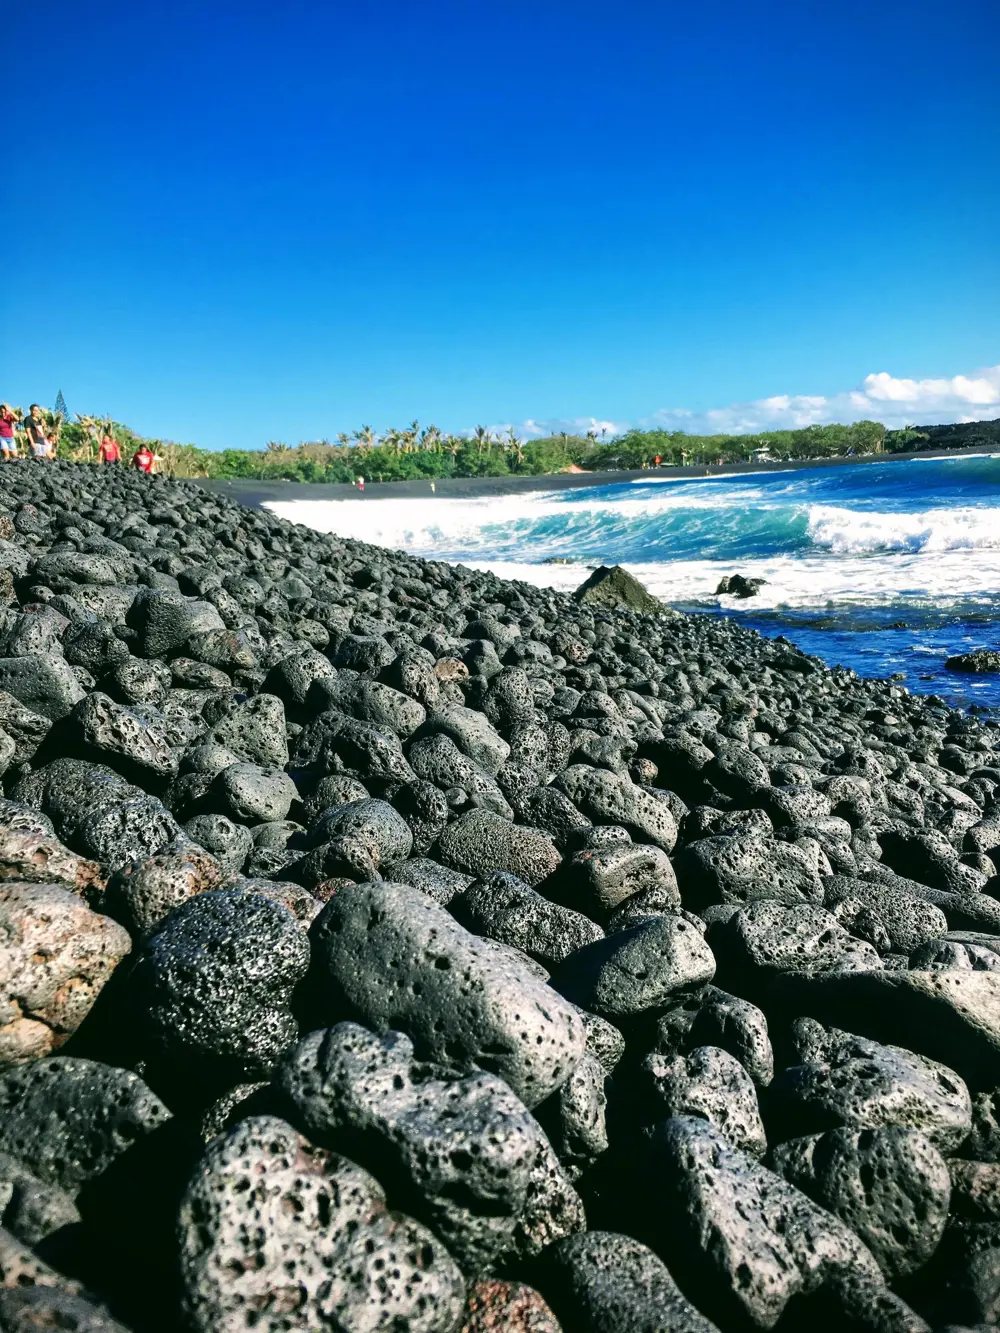 pahoa fehete vulkanikus kövek hullámtörő az óceánparton